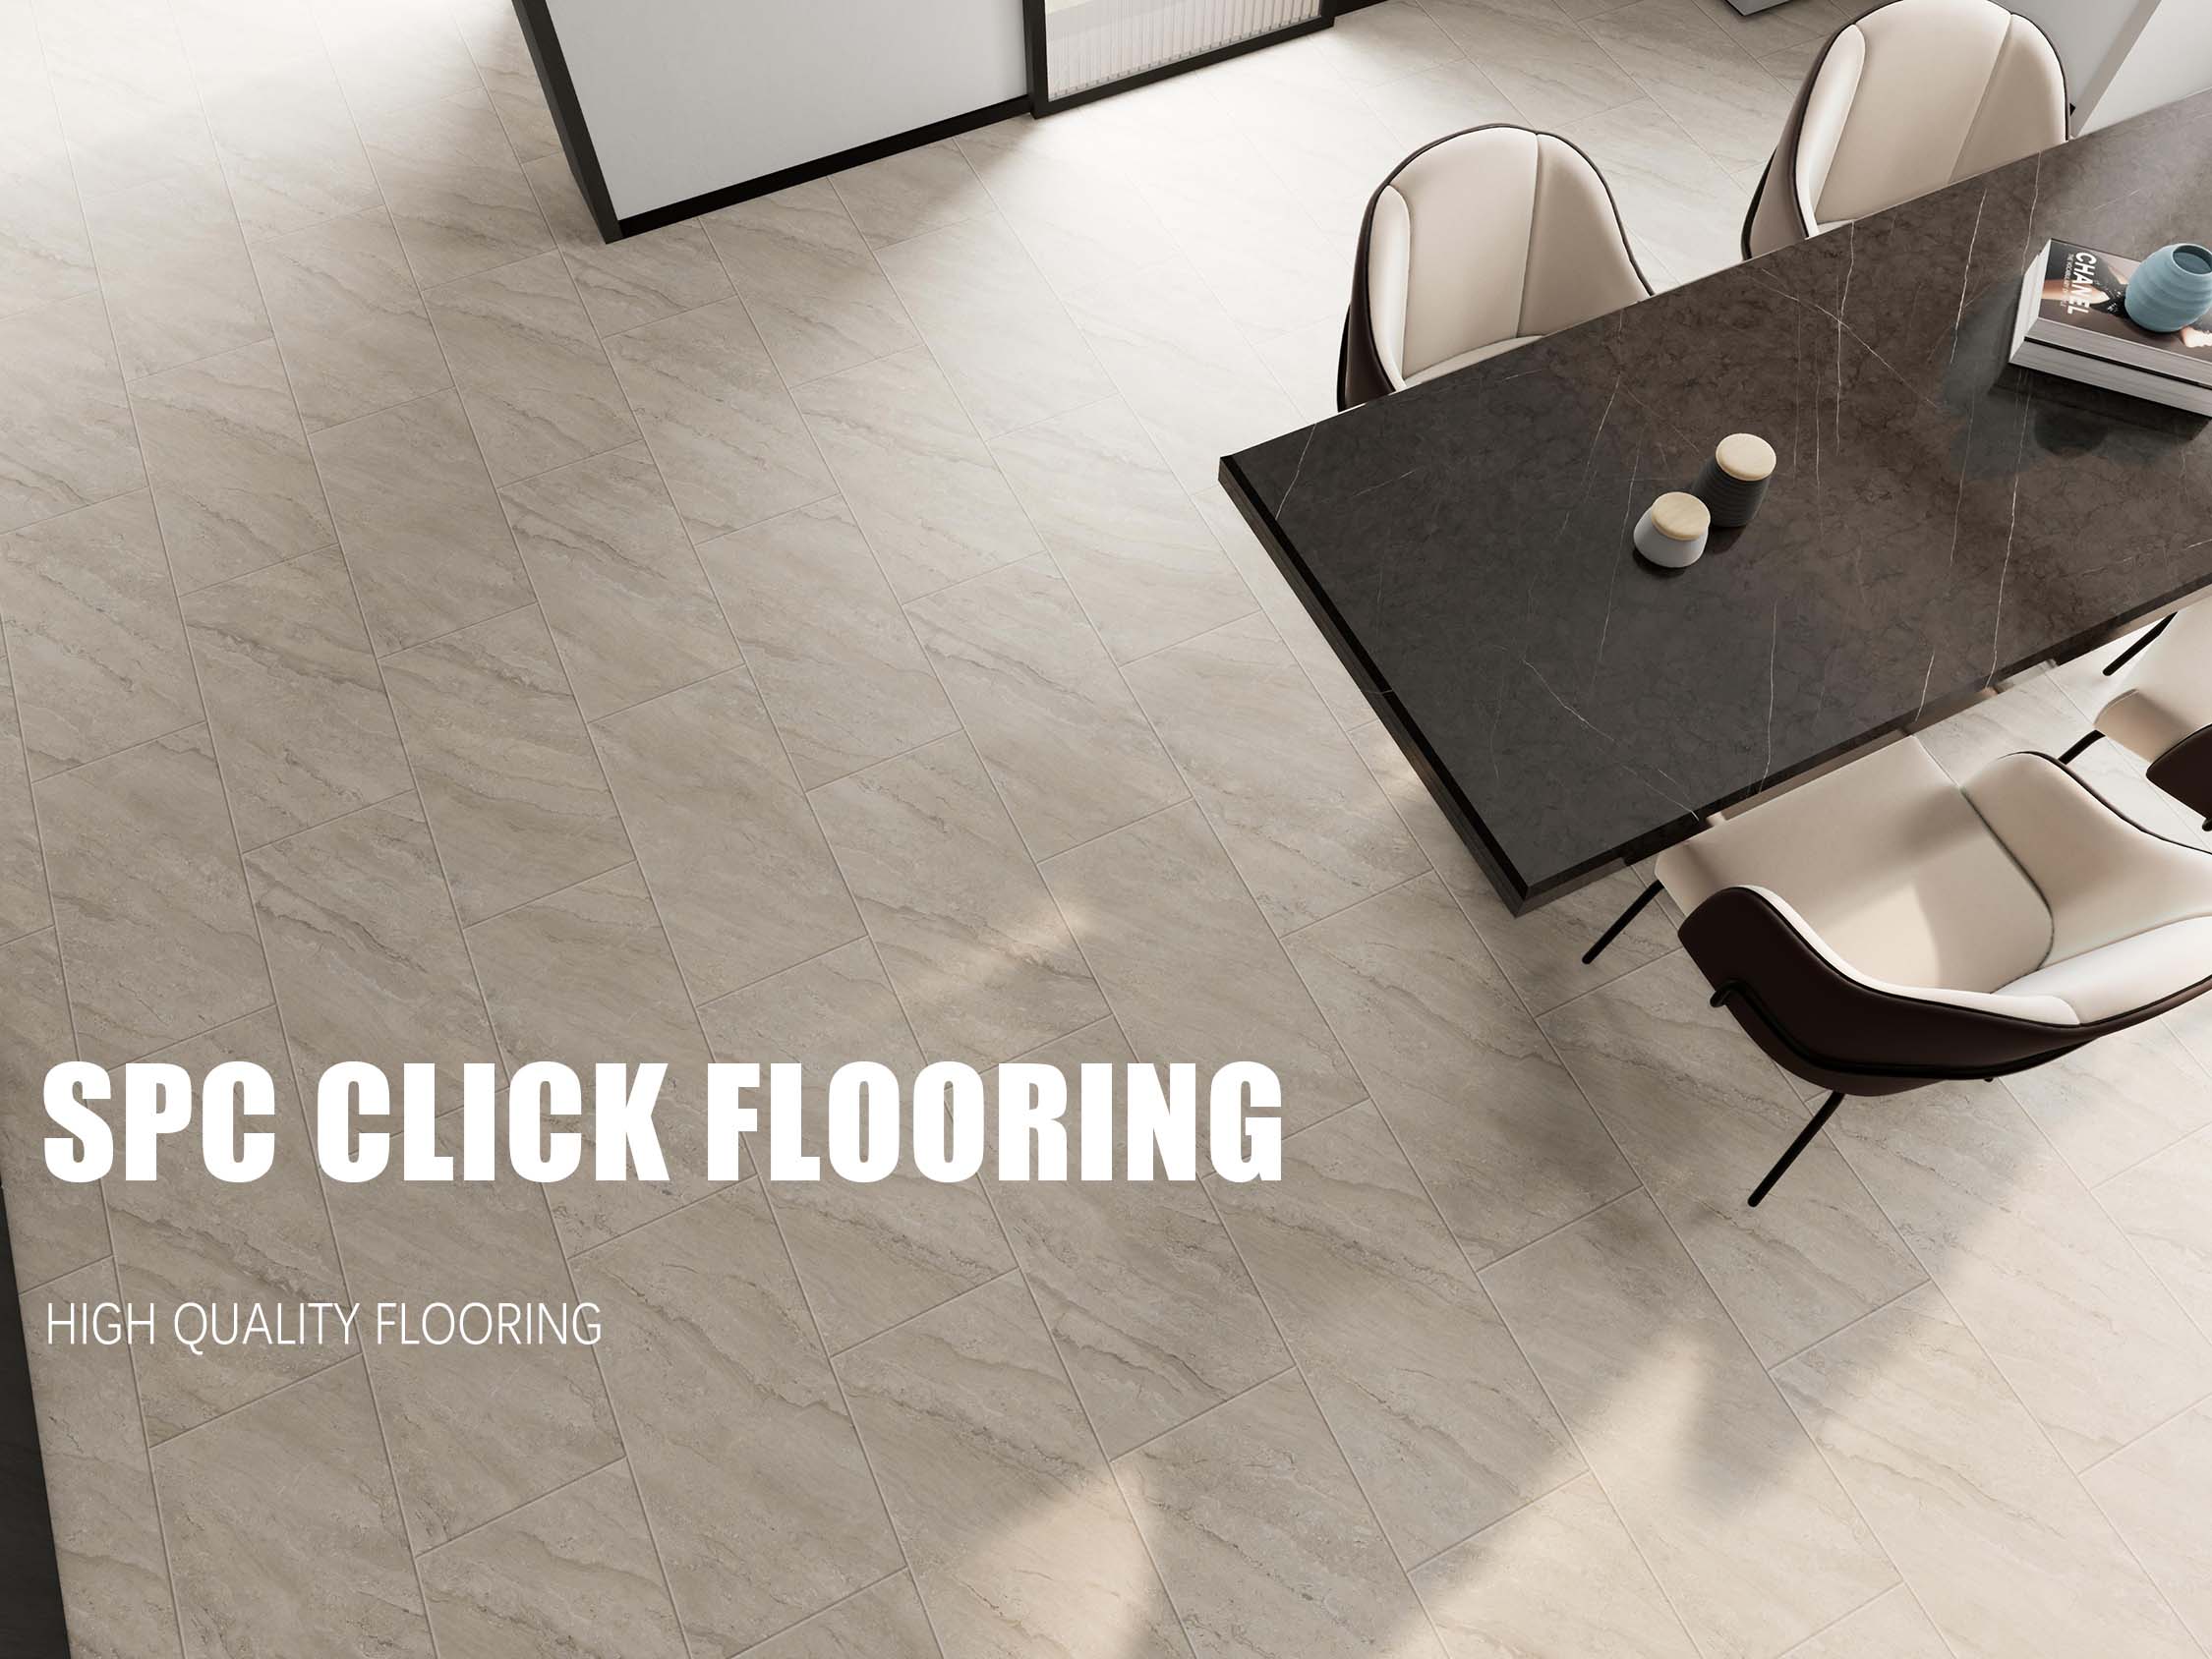 spc flooring supplier